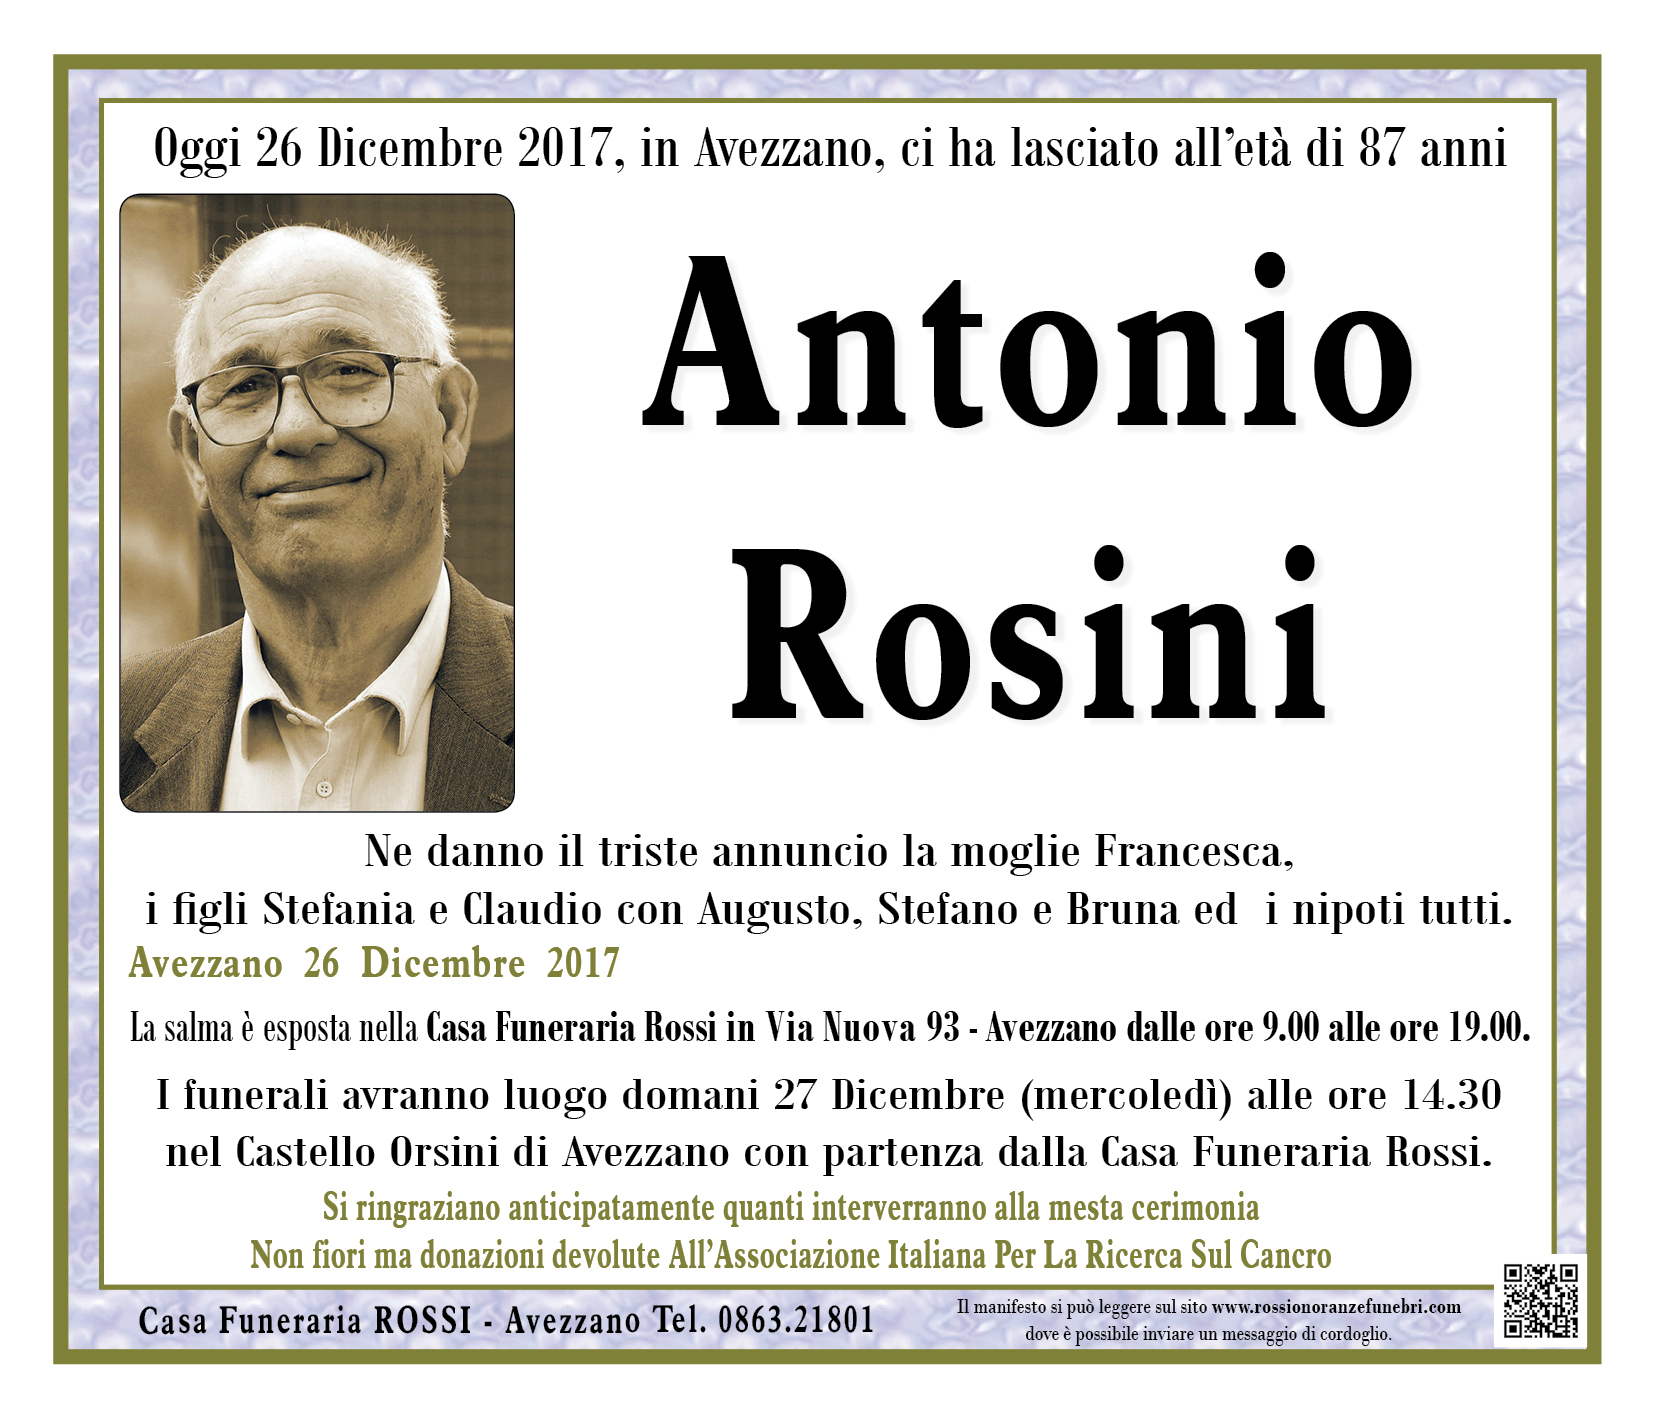 Antonio Rosini